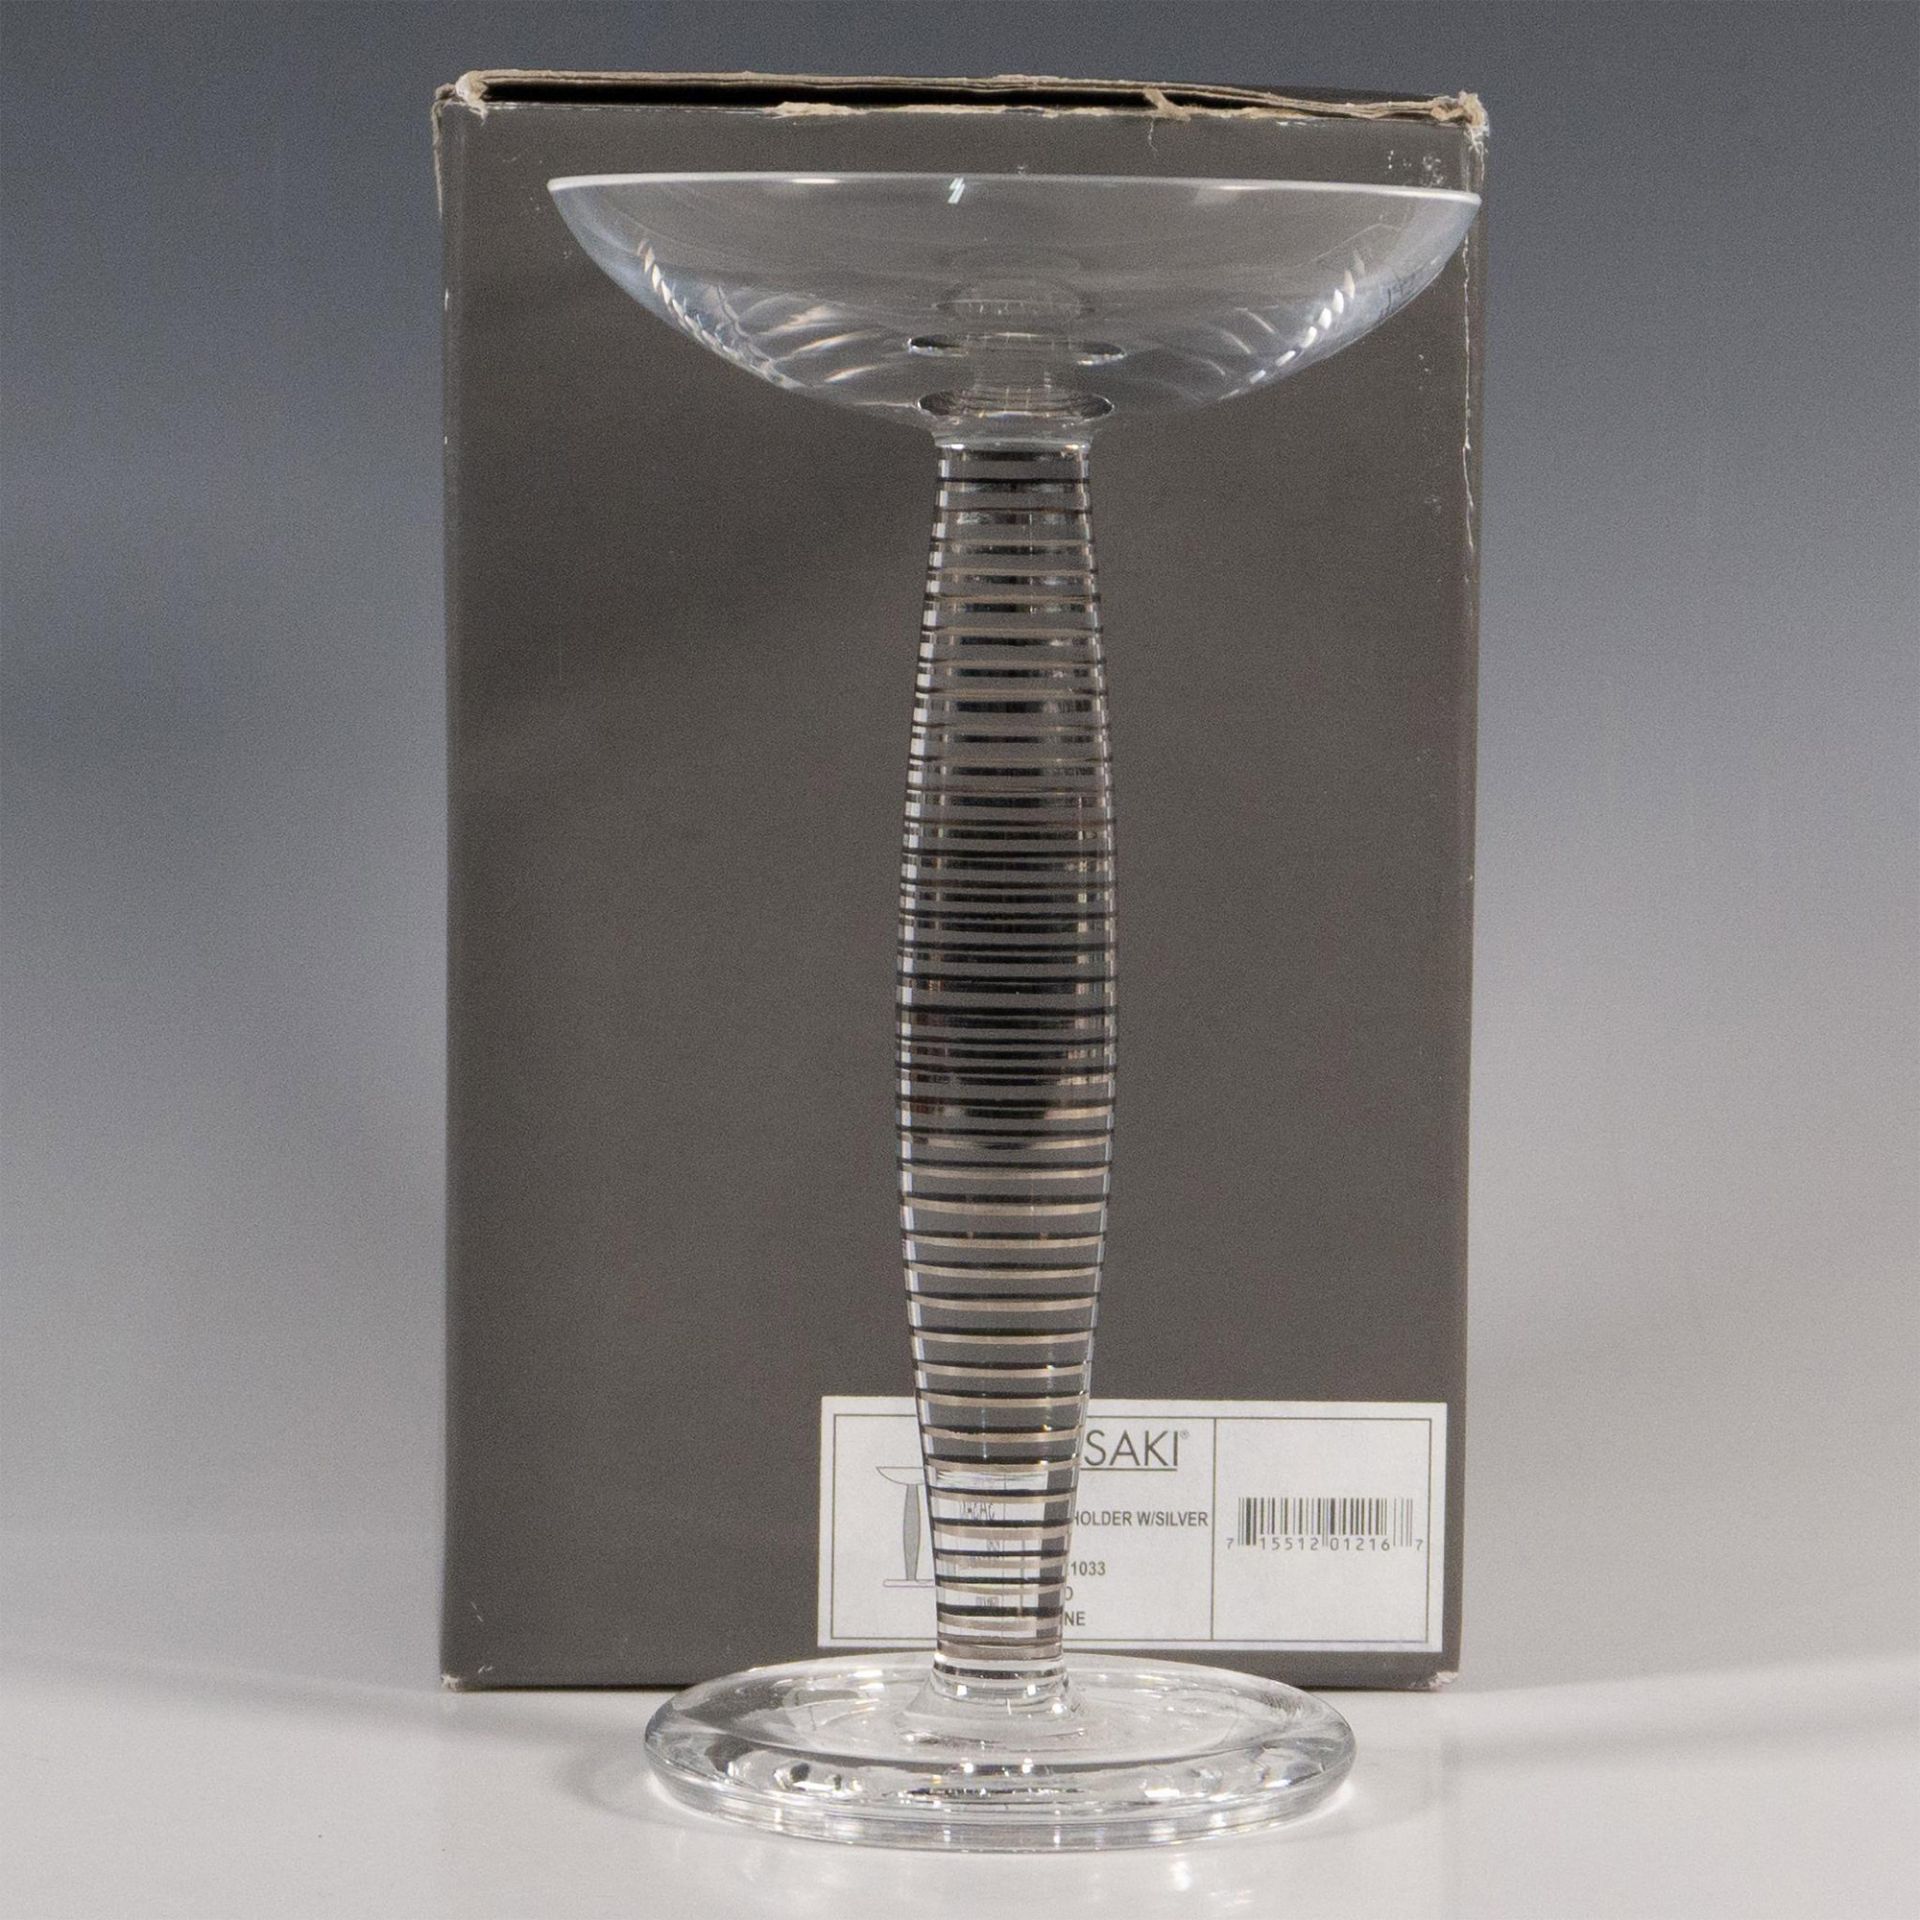 Sasaki Glass Candle Holder, Echo - Image 2 of 4